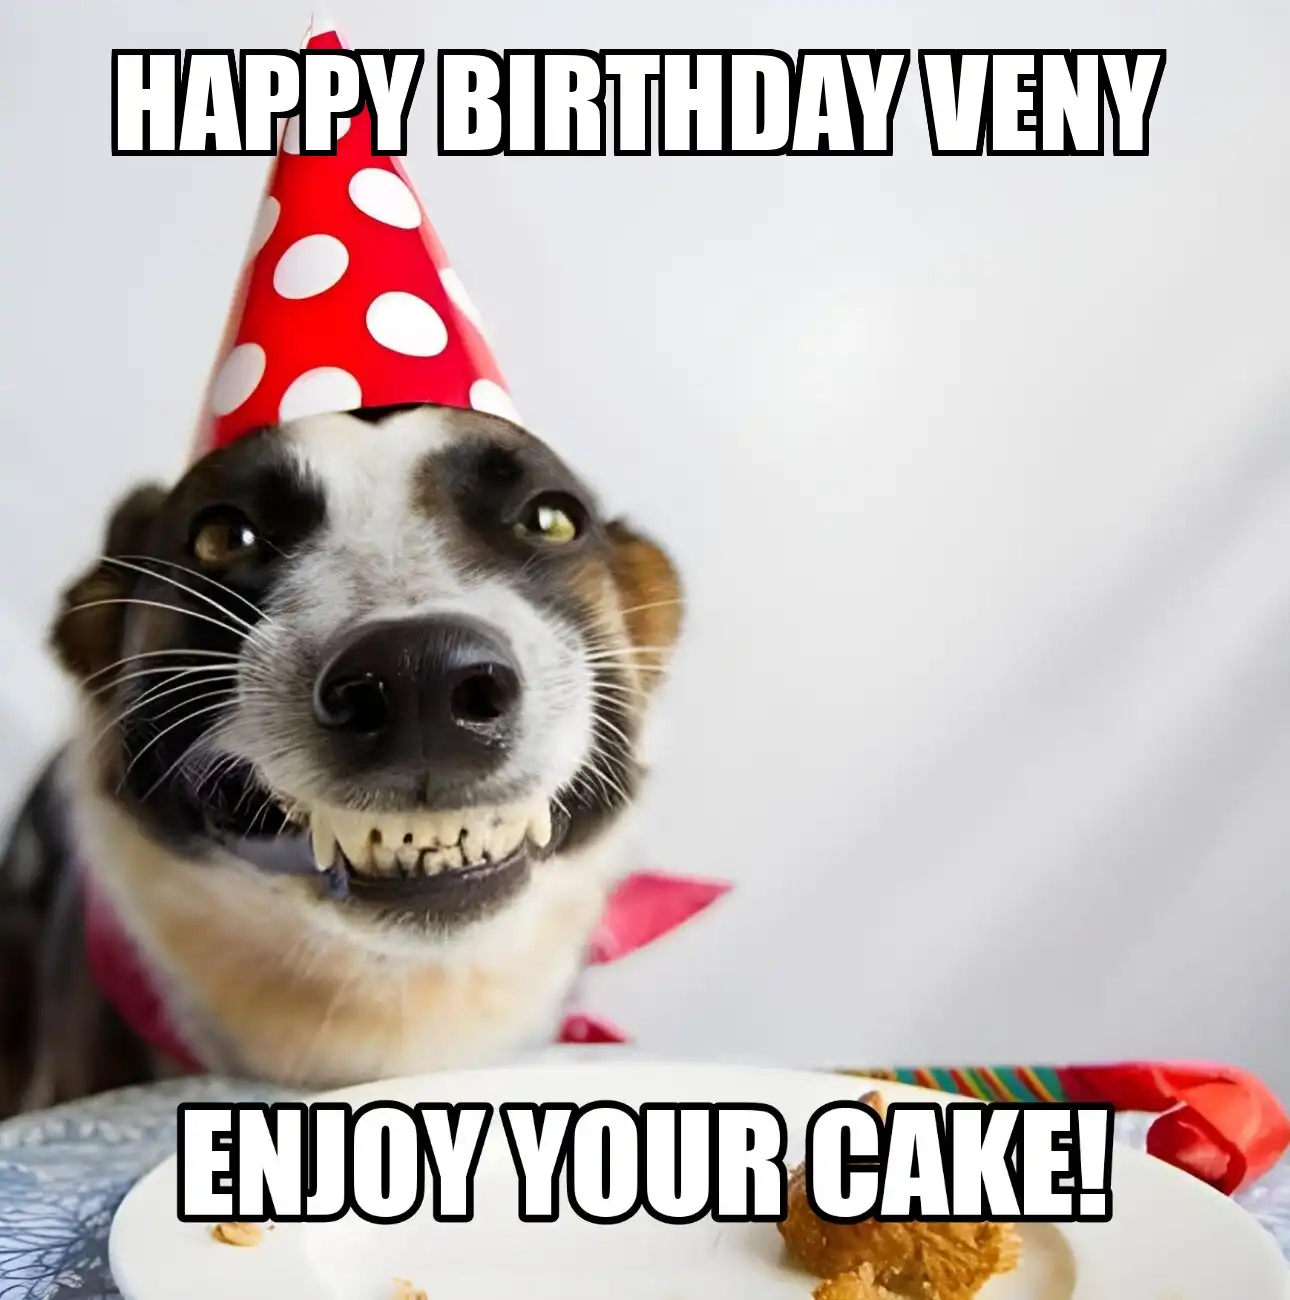 Happy Birthday Veny Enjoy Your Cake Dog Meme